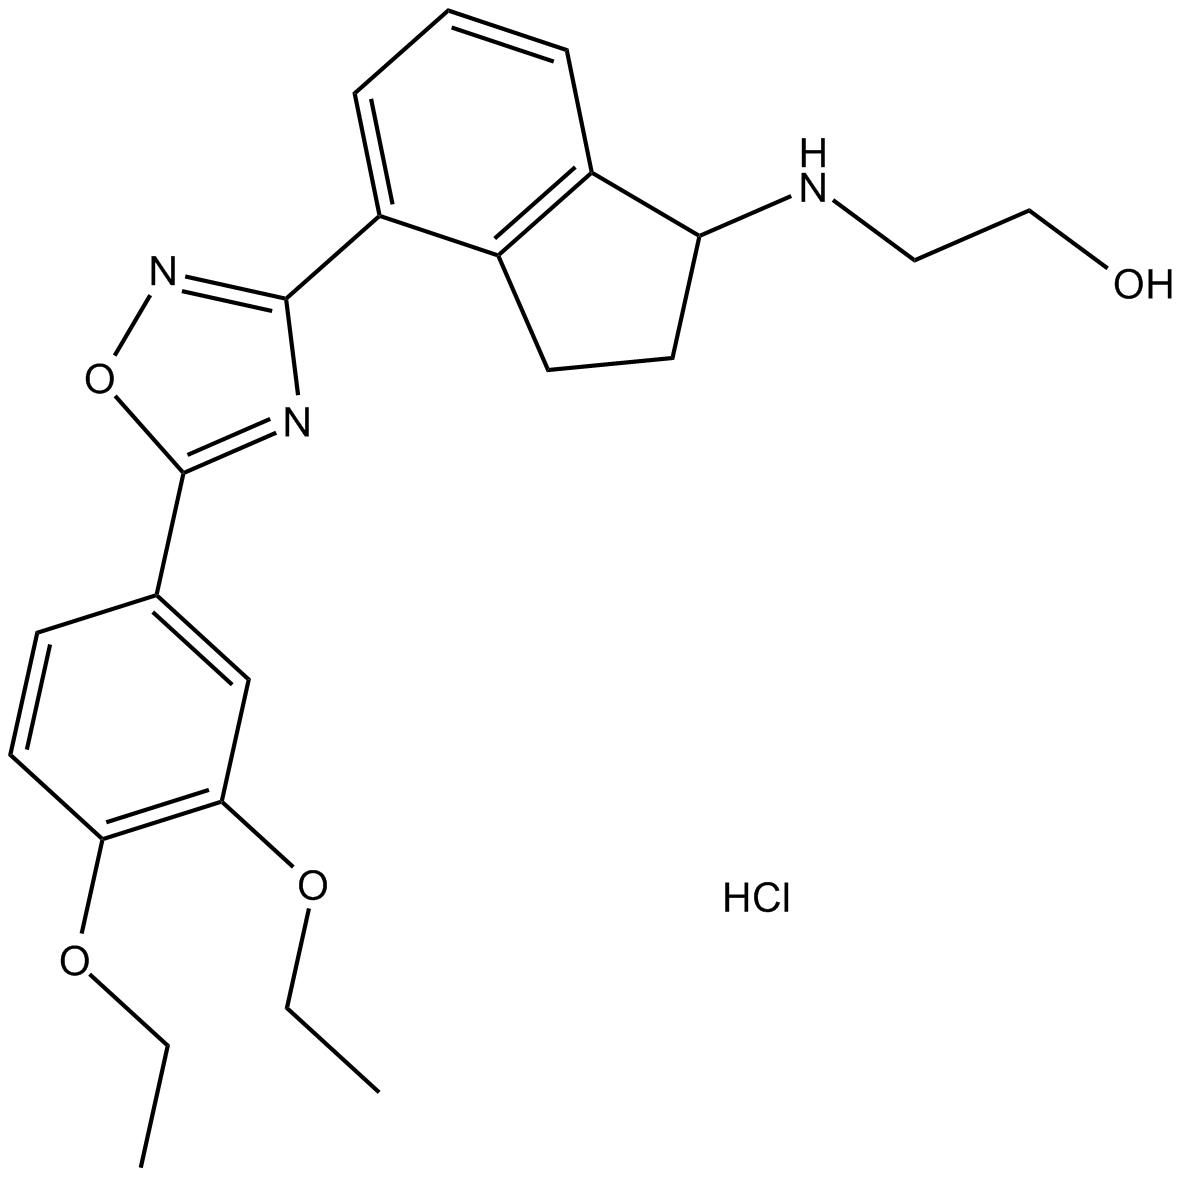 CYM 5442 hydrochloride